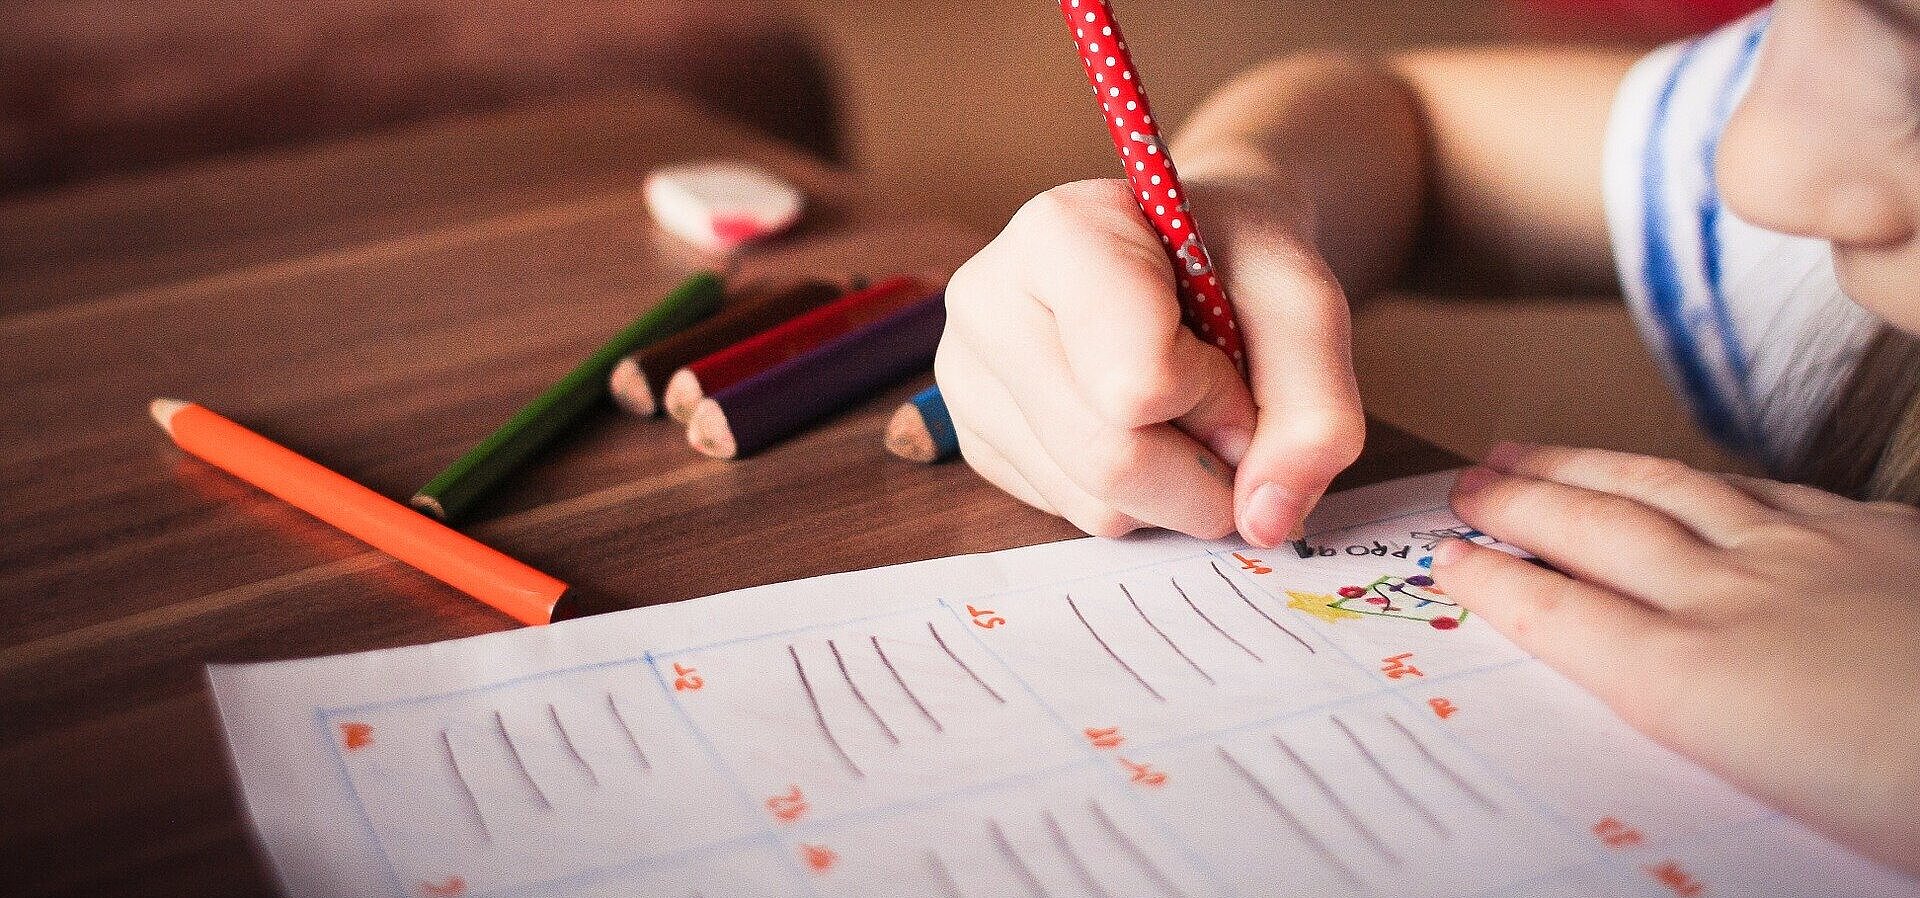 menina desenhando em papel com lápis coloridos